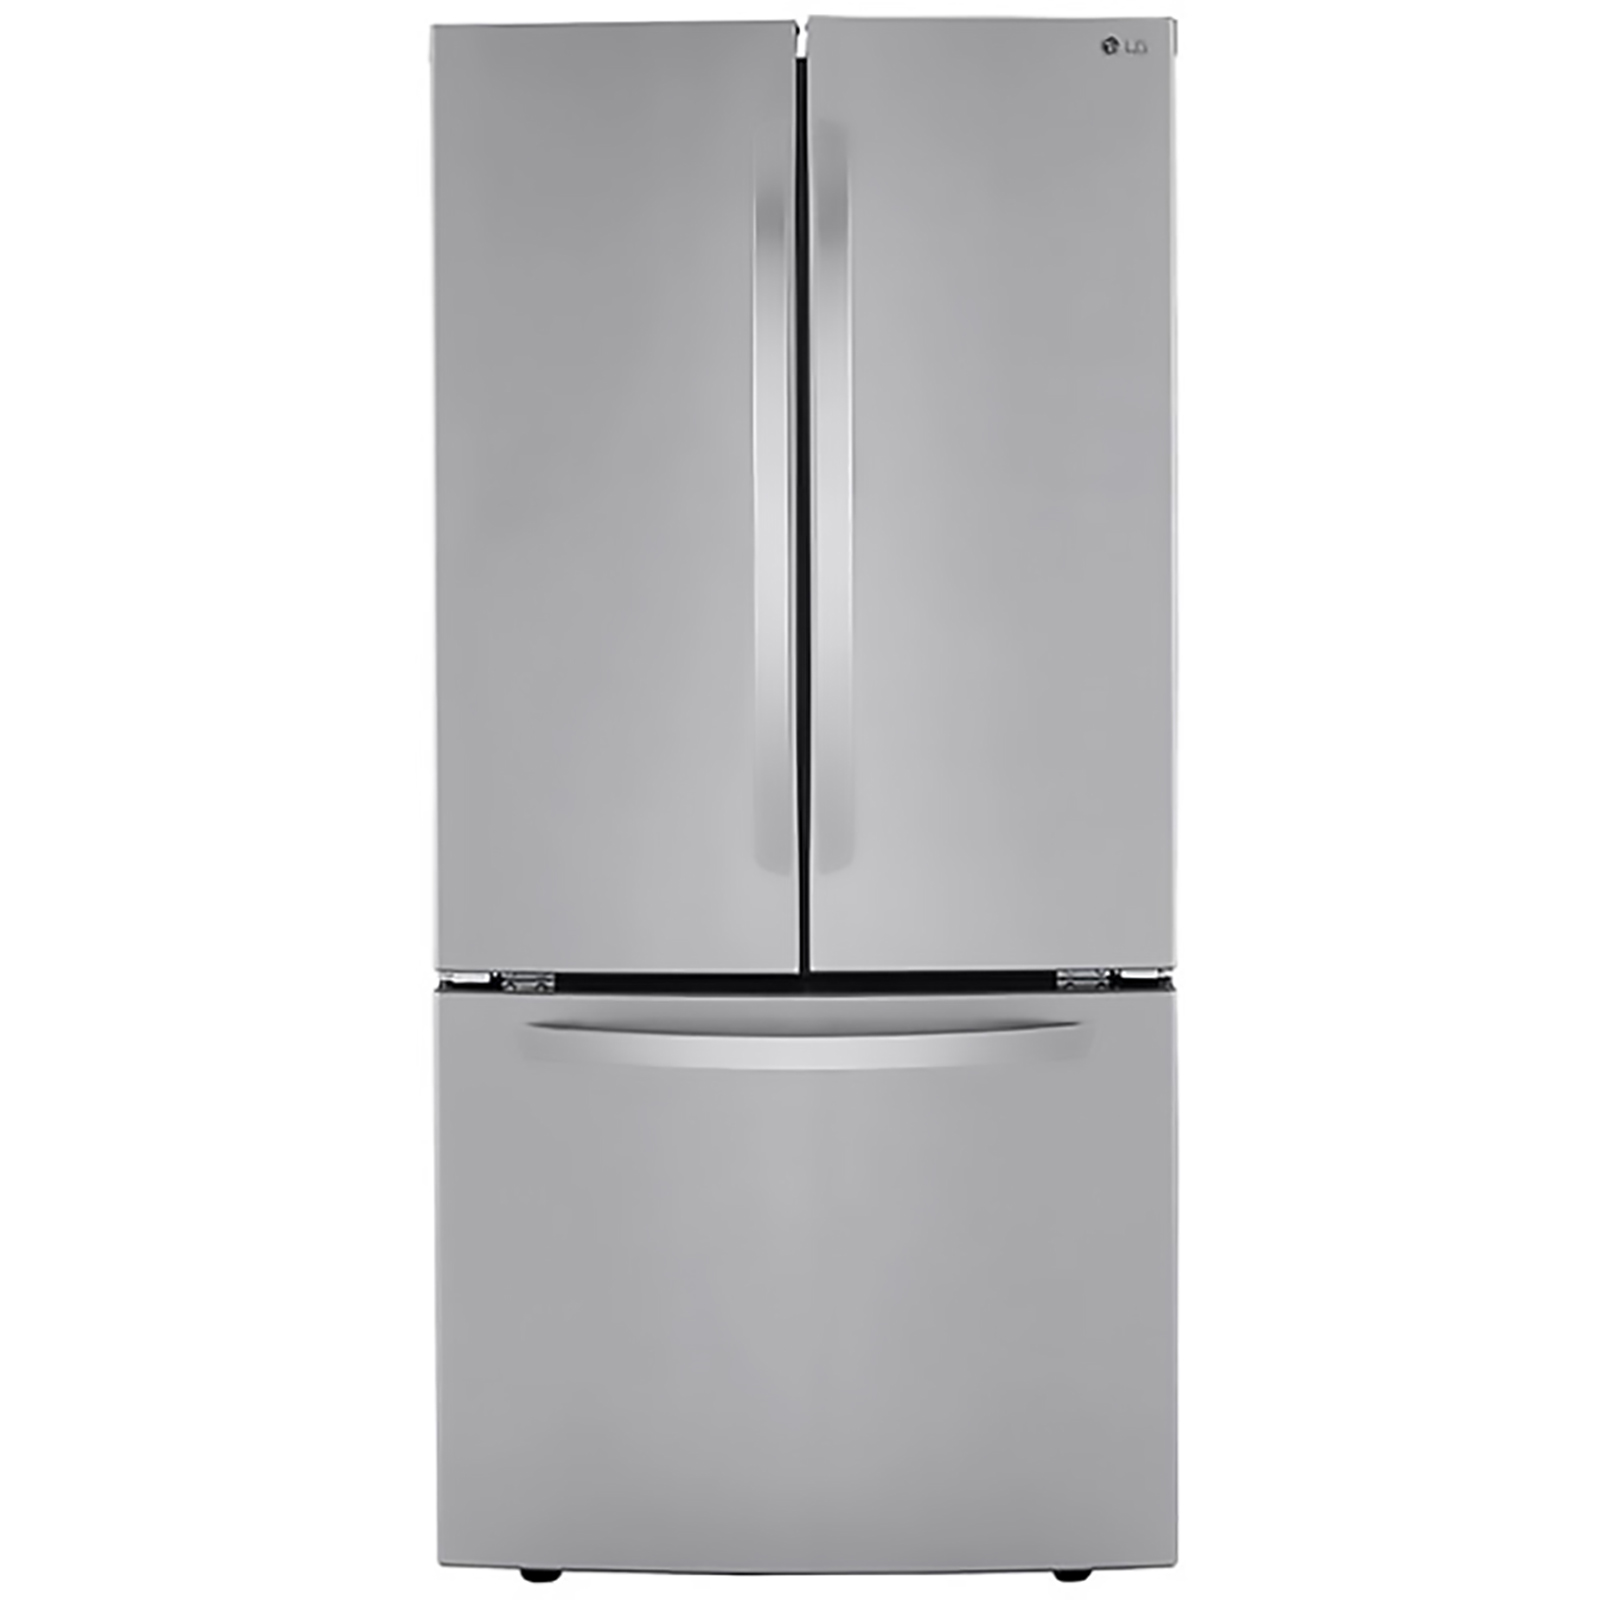 LG LRFCS25D3S  25cu.ft. Freestanding French Door Refrigerator